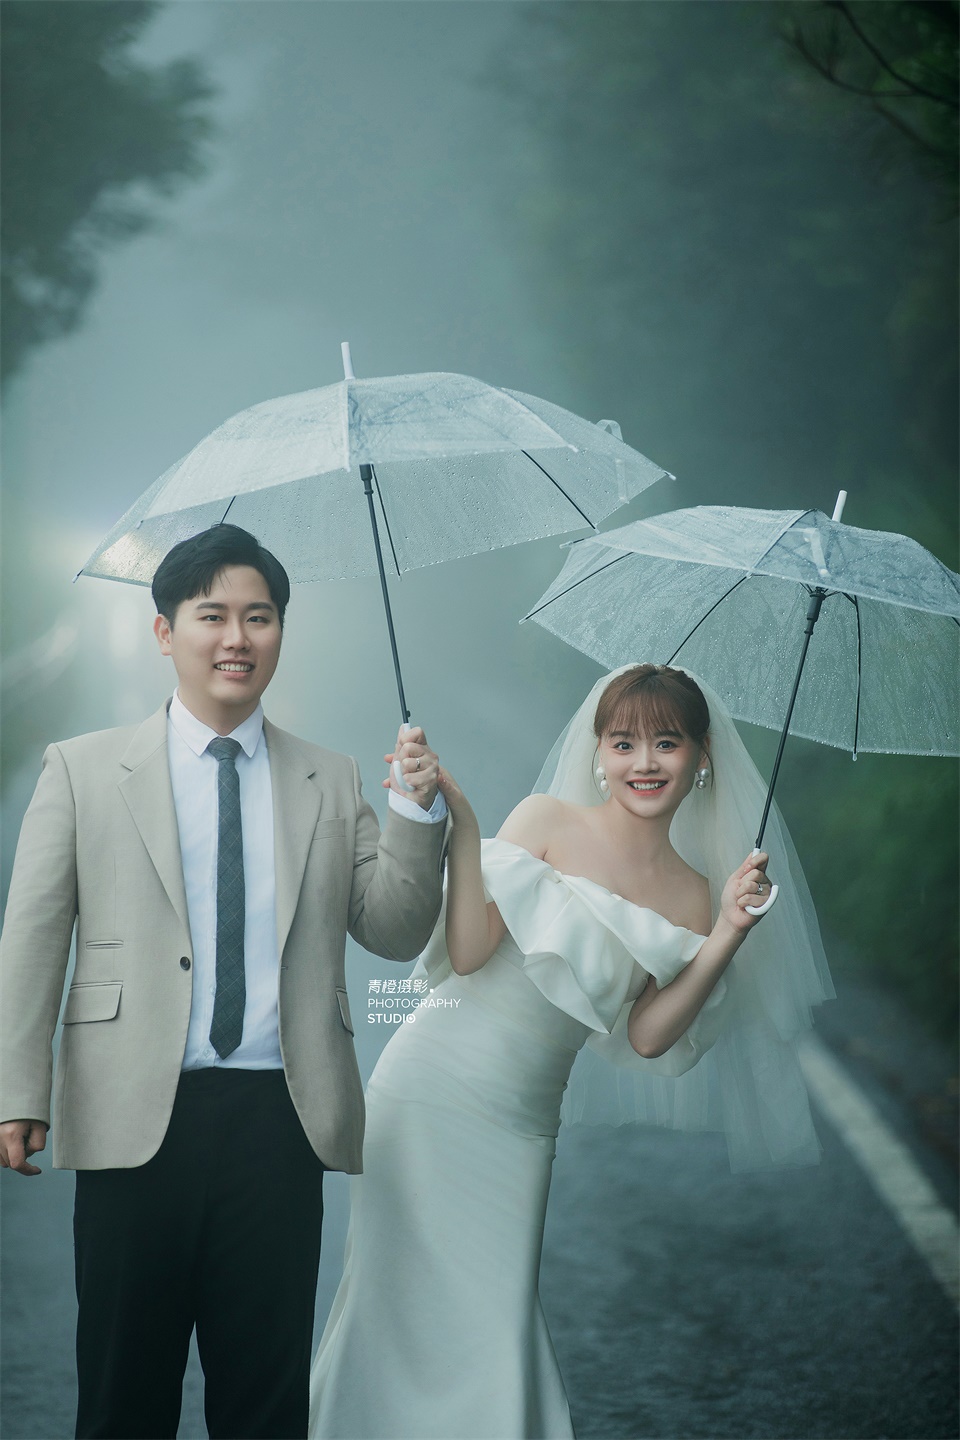 【外景】雨天限定婚纱照 ，格外浪漫，氛围感拉满 